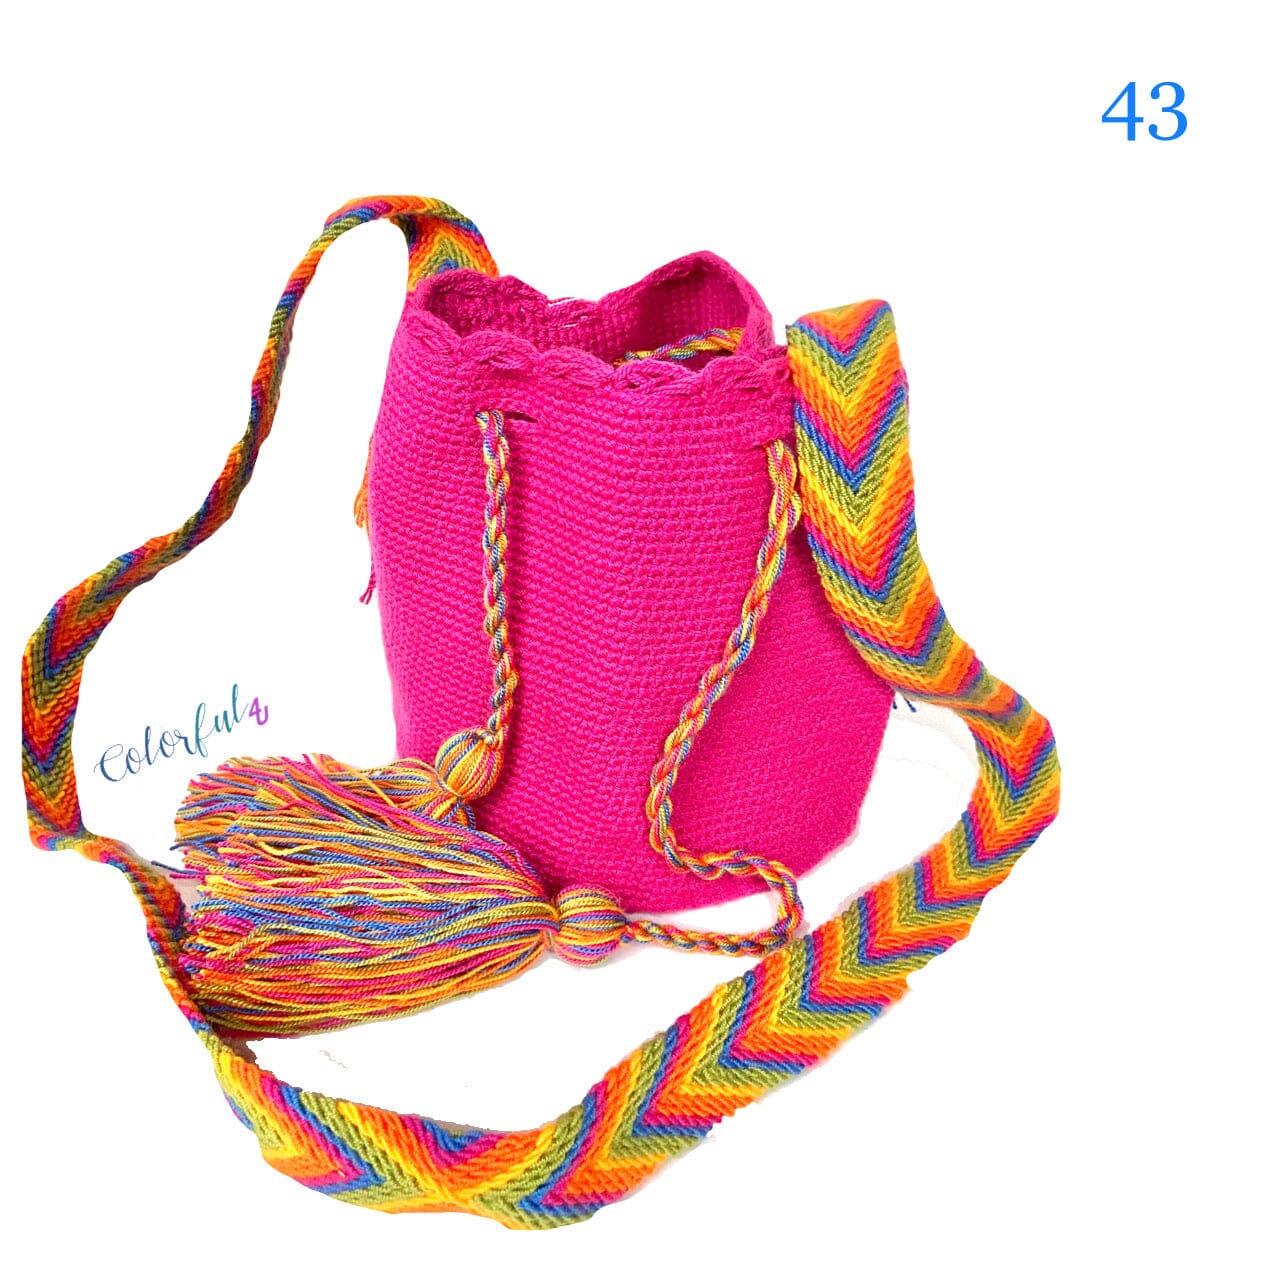 Mini Fuchsia Crochet Bag for Girls | Small Crossbody Bag for summer